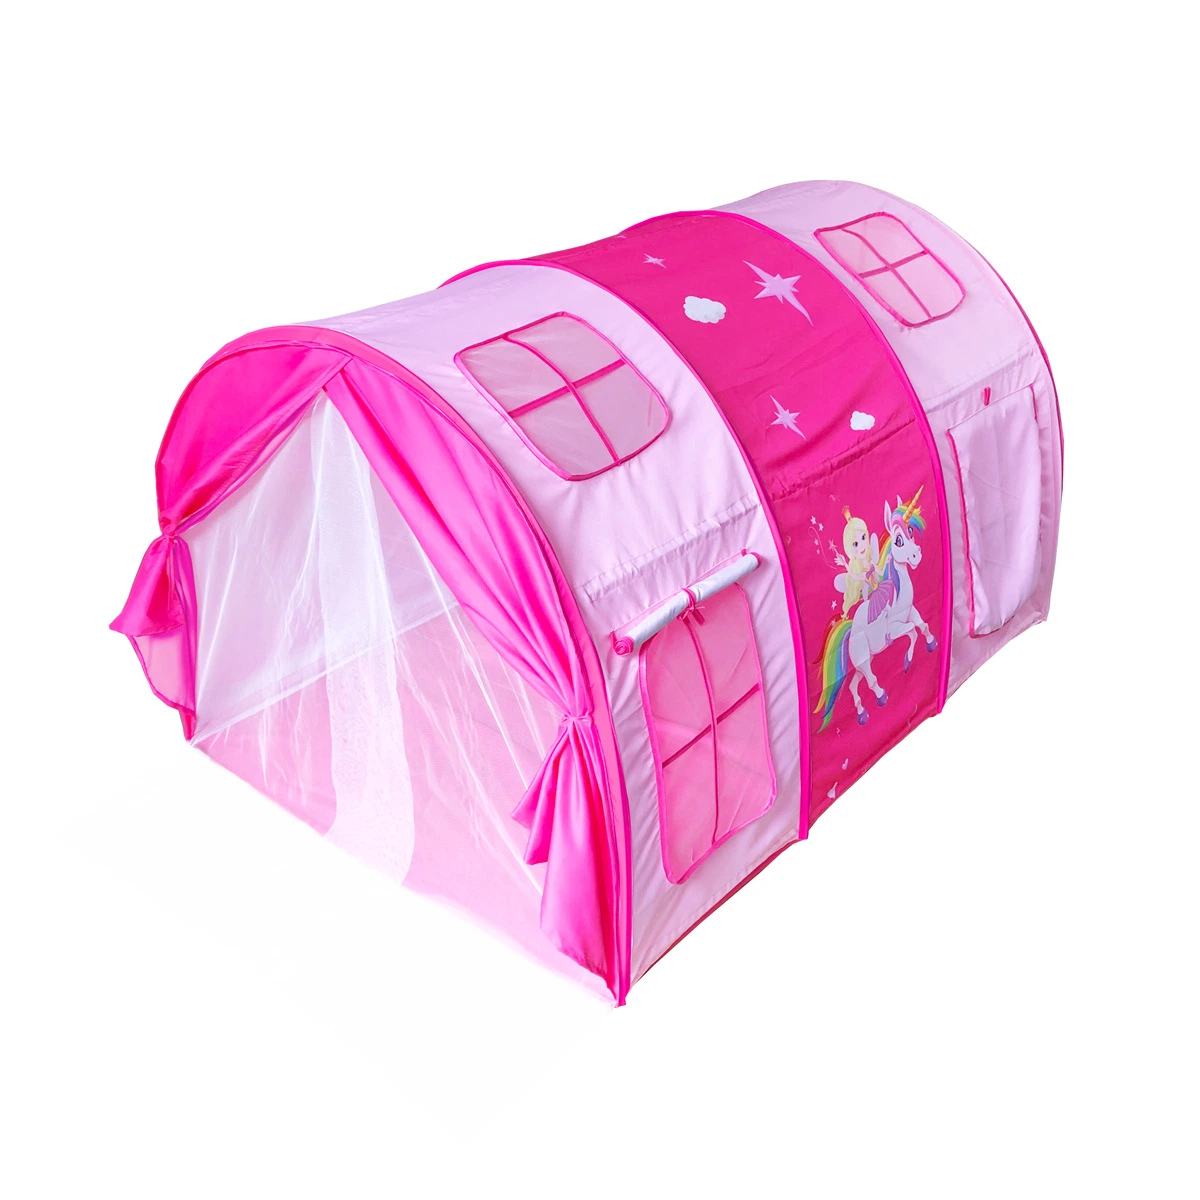 Детей кровать палатка отдельной кроватью играть дома для использования внутри помещений замок Magic игрушка Единорог" для установки вне помещений